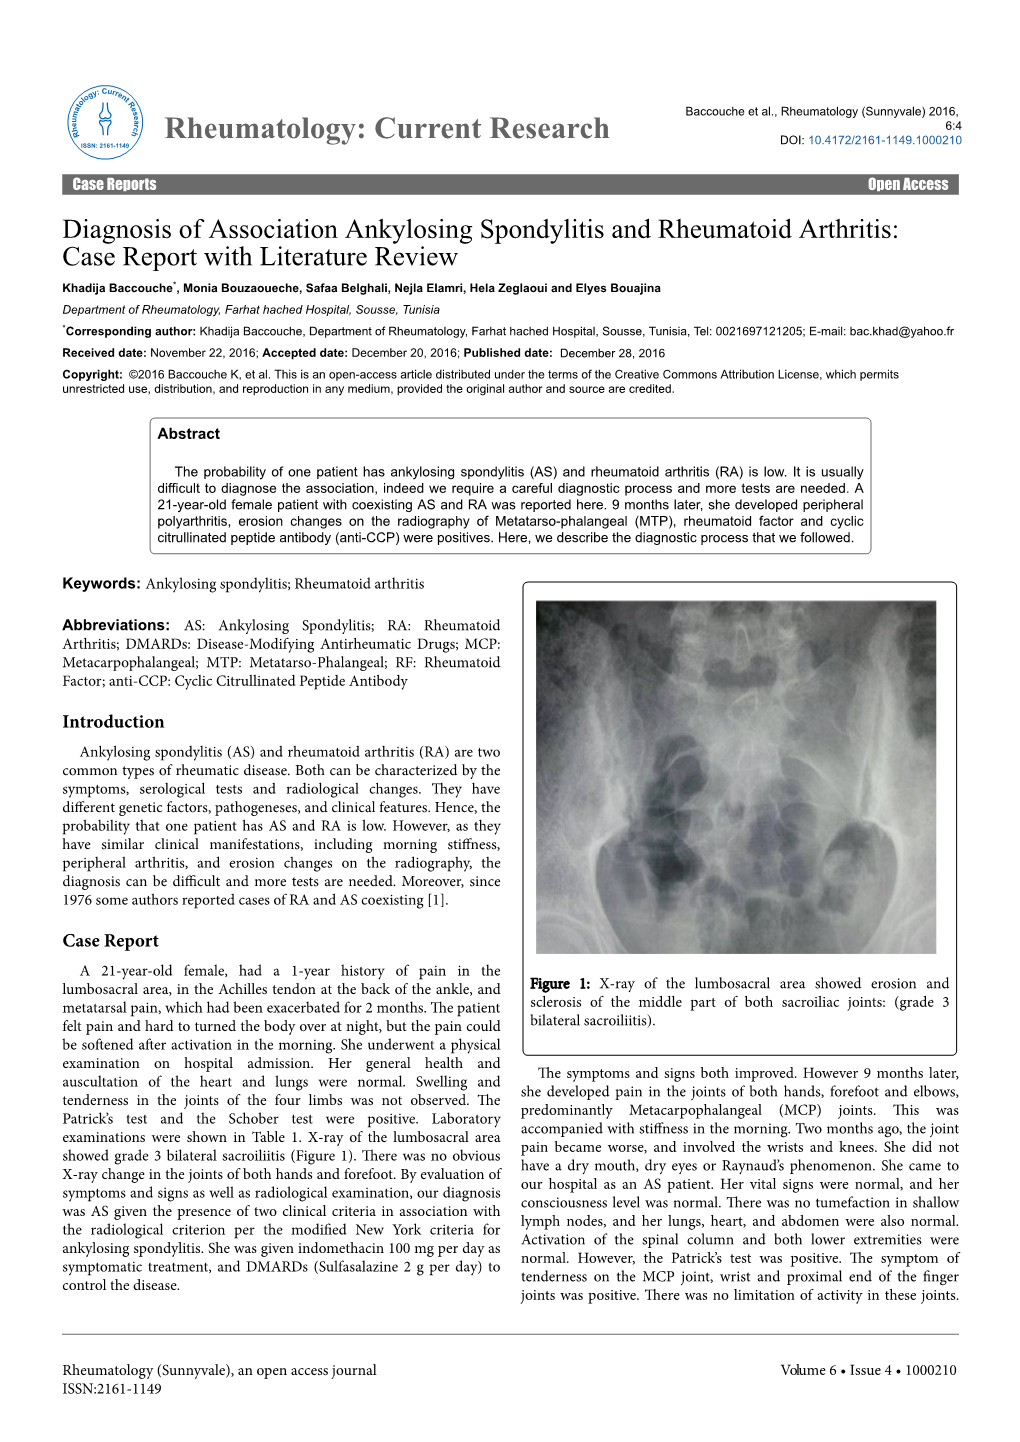 Diagnosis of Association Ankylosing Spondylitis and Rheumatoid Arthritis